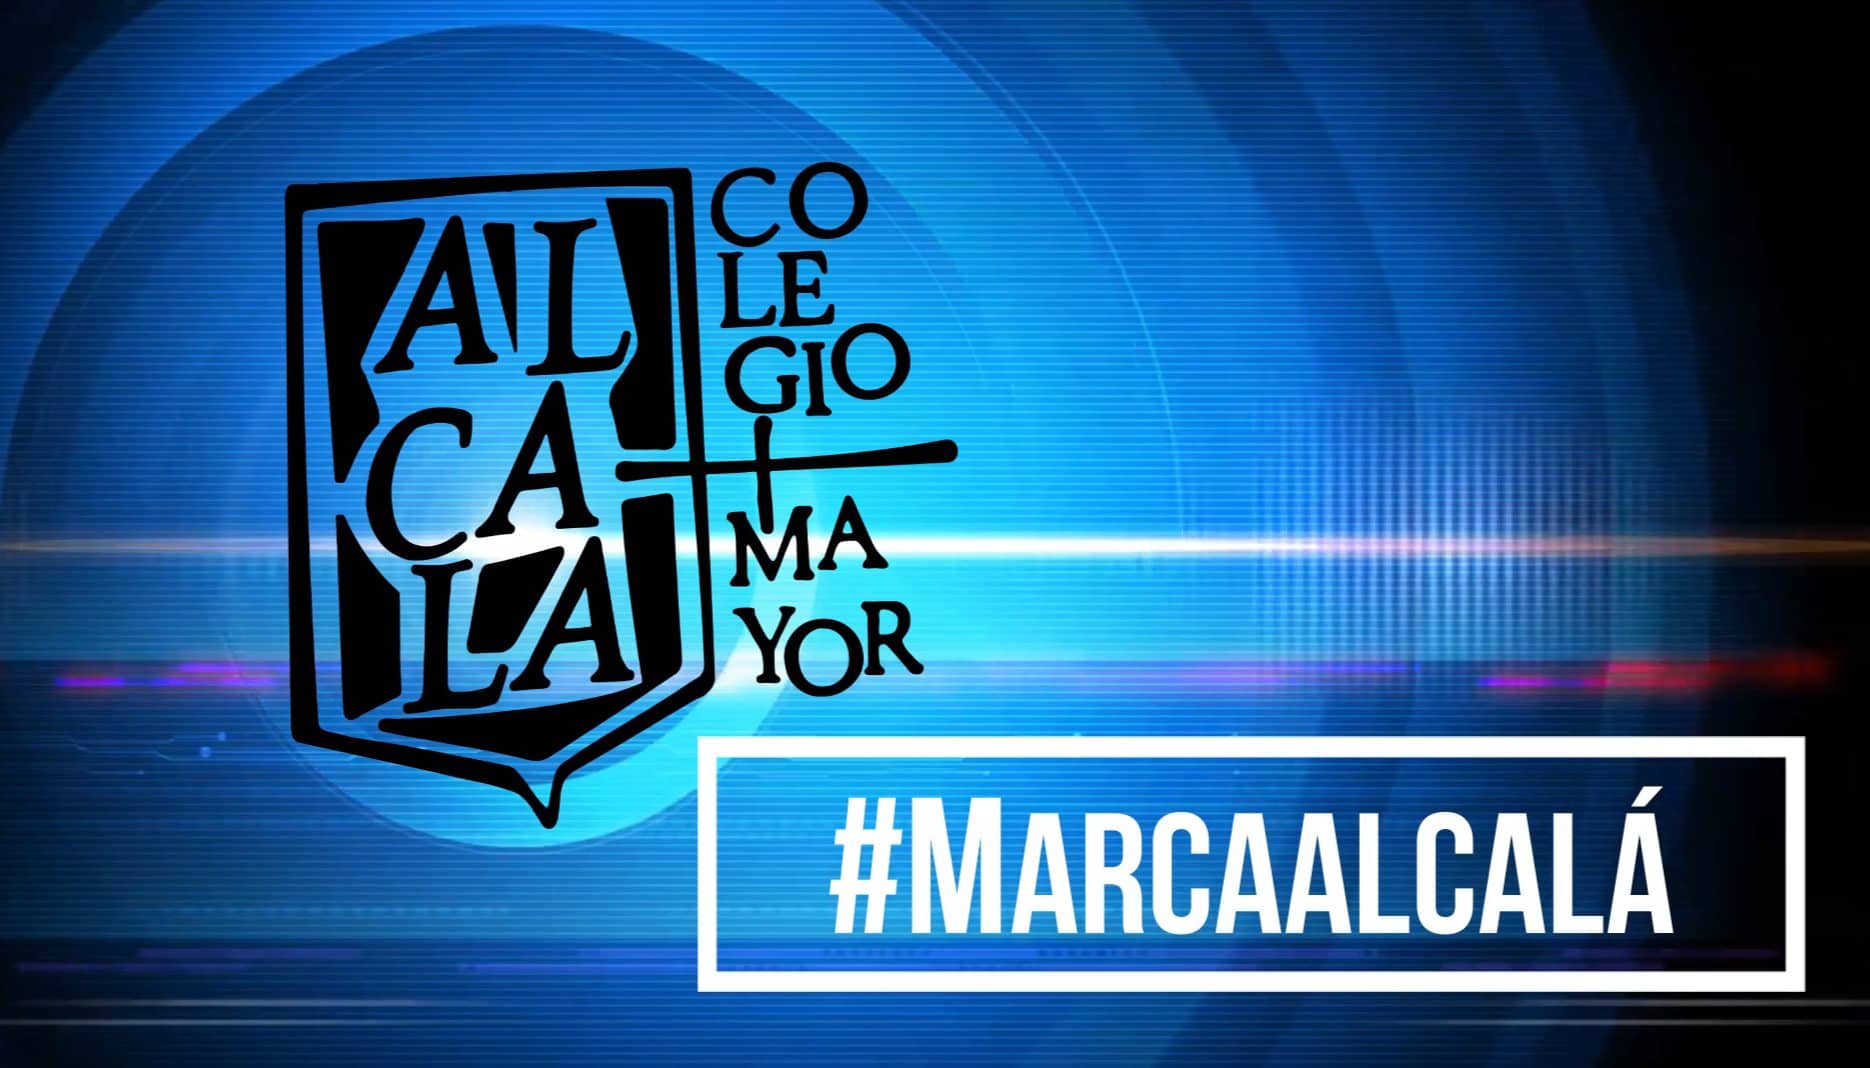 Hoy inauguramos en todas nuestras redes sociales esta nueva campaña: "Testimonios #MarcaAlcalá"